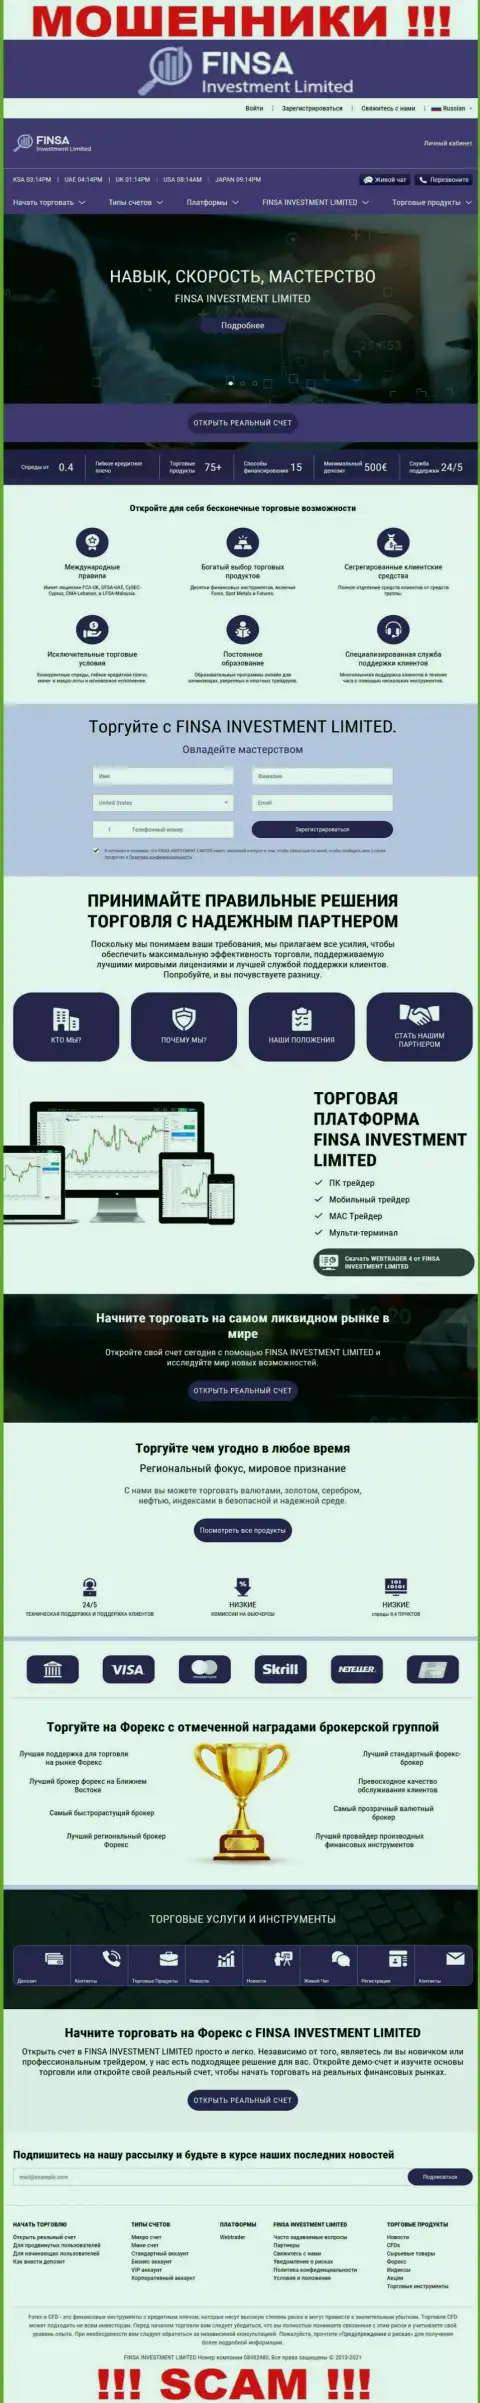 Сайт компании Finsa Investment Limited, забитый фальшивой информацией